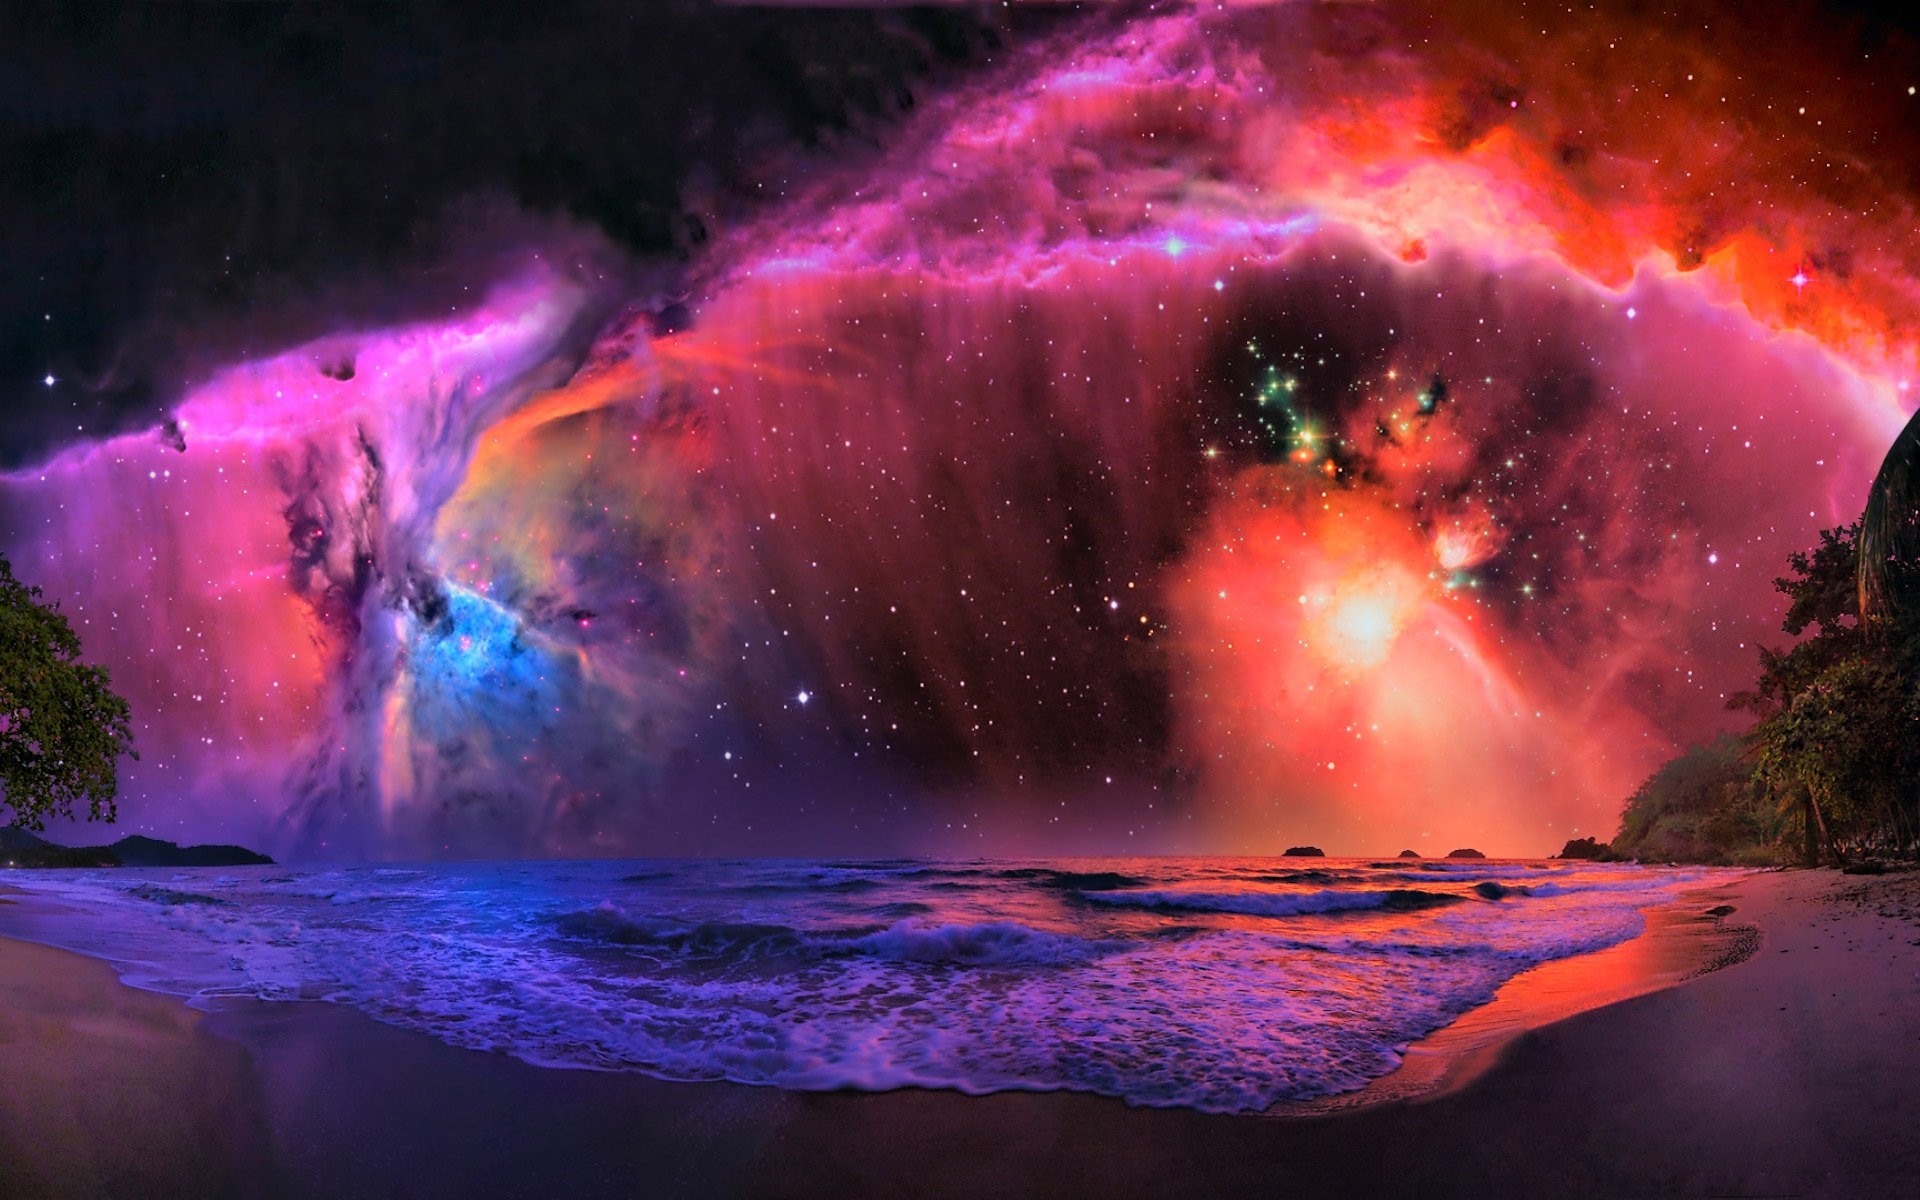 Tận hưởng sự lãng mạn và kỳ diệu của vũ trụ với bộ sưu tập Galaxy Wallpapers đầy tràn màu sắc và hình ảnh độc đáo. Tham gia chuyến phiêu lưu để khám phá các hành tinh xa xôi trong không gian bao la.